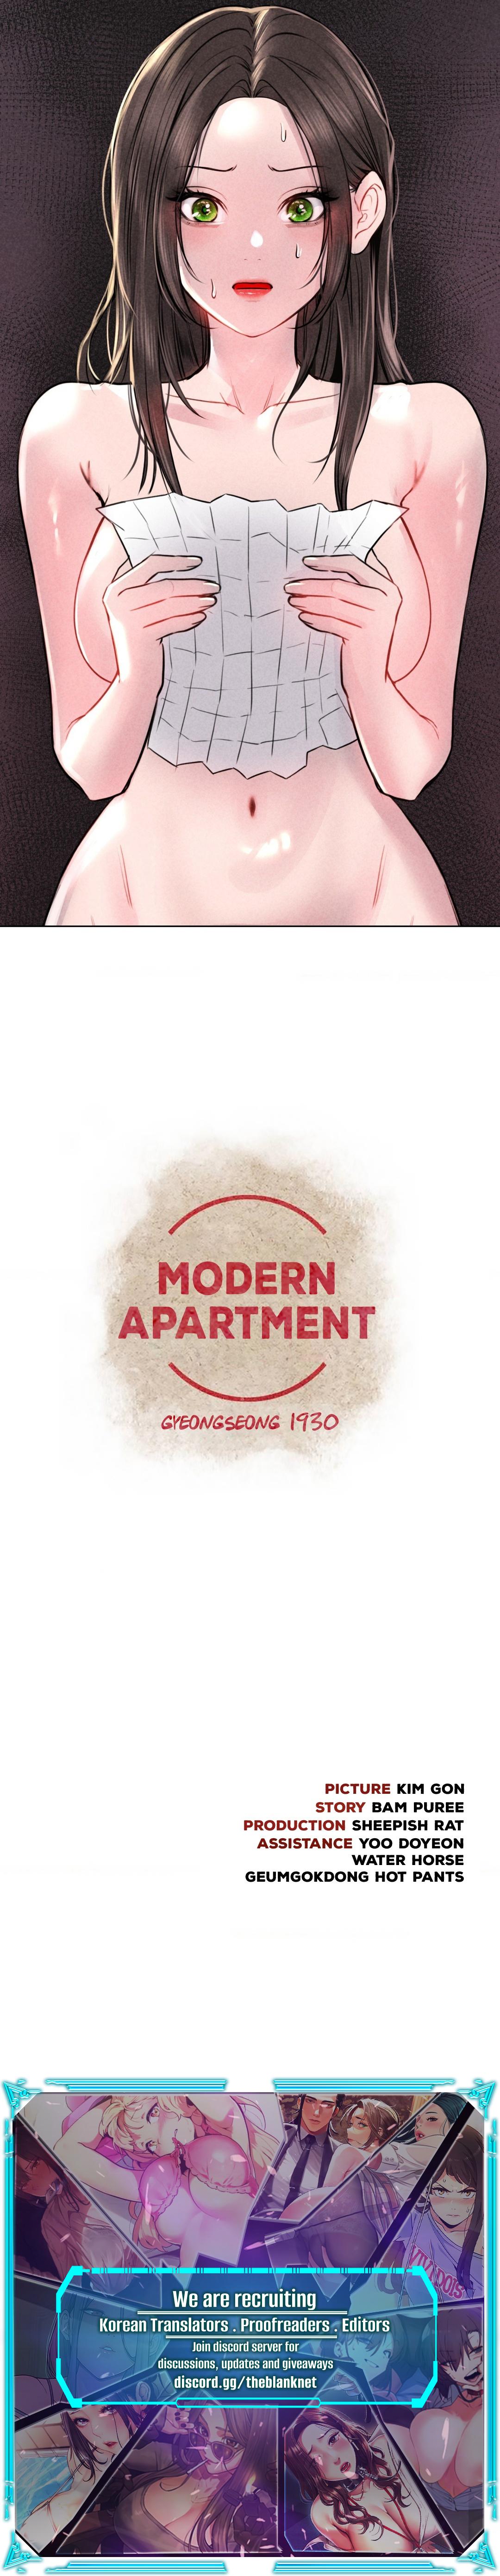 Read manhwa Modern Apartment, Gyeongseong 1930 Chapter 19 - SauceManhwa.com